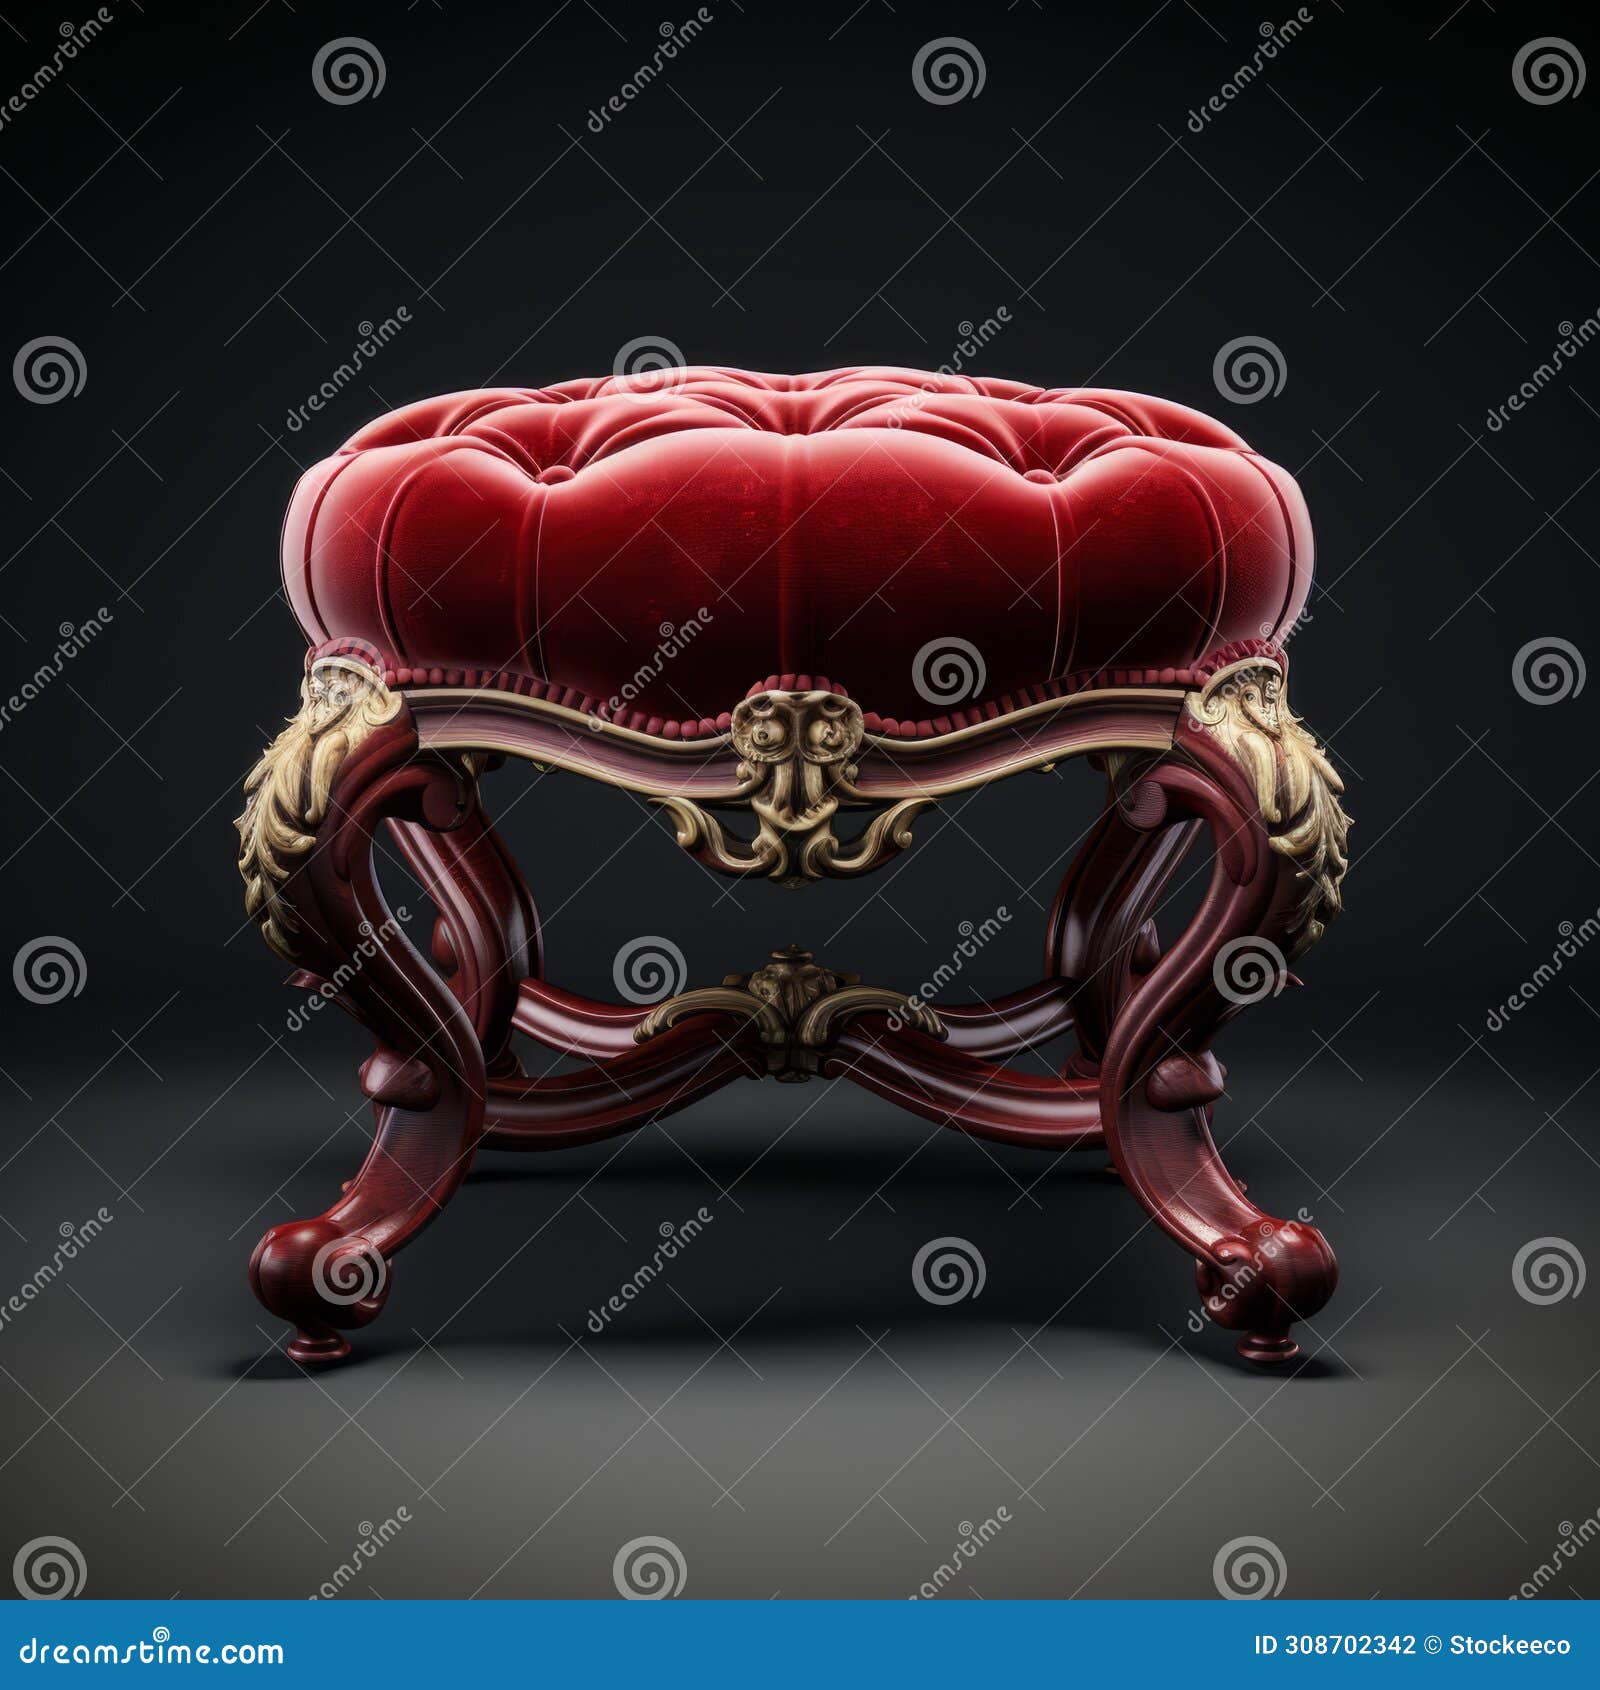 stunning velvet victorian foot stool in 8k resolution